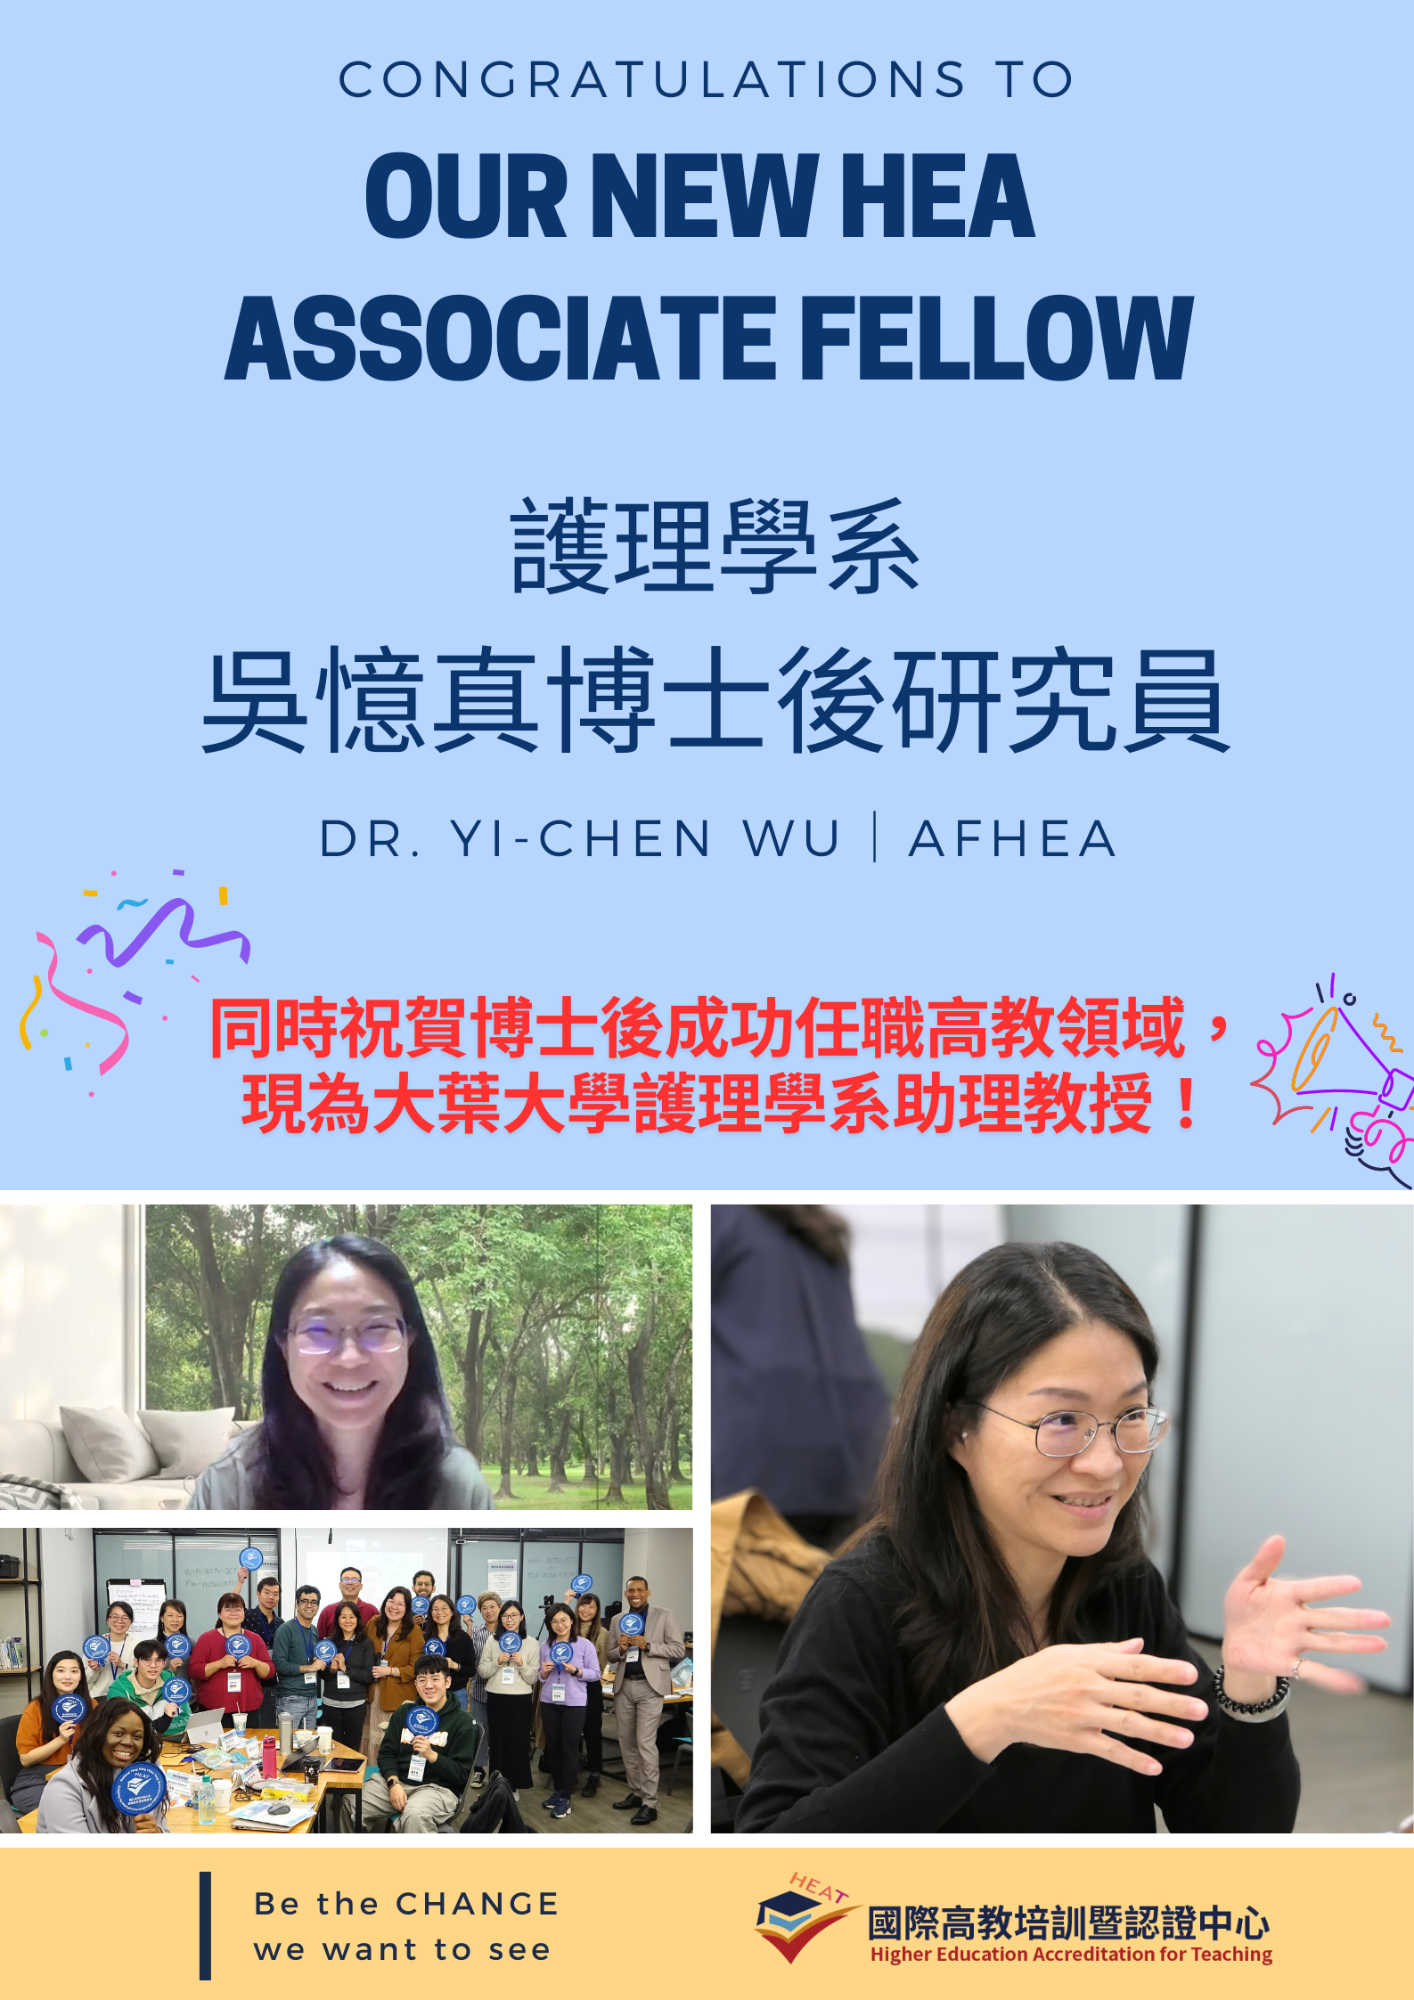 HEA Associate Fellow ─Dr. Yi-Chen Wu!